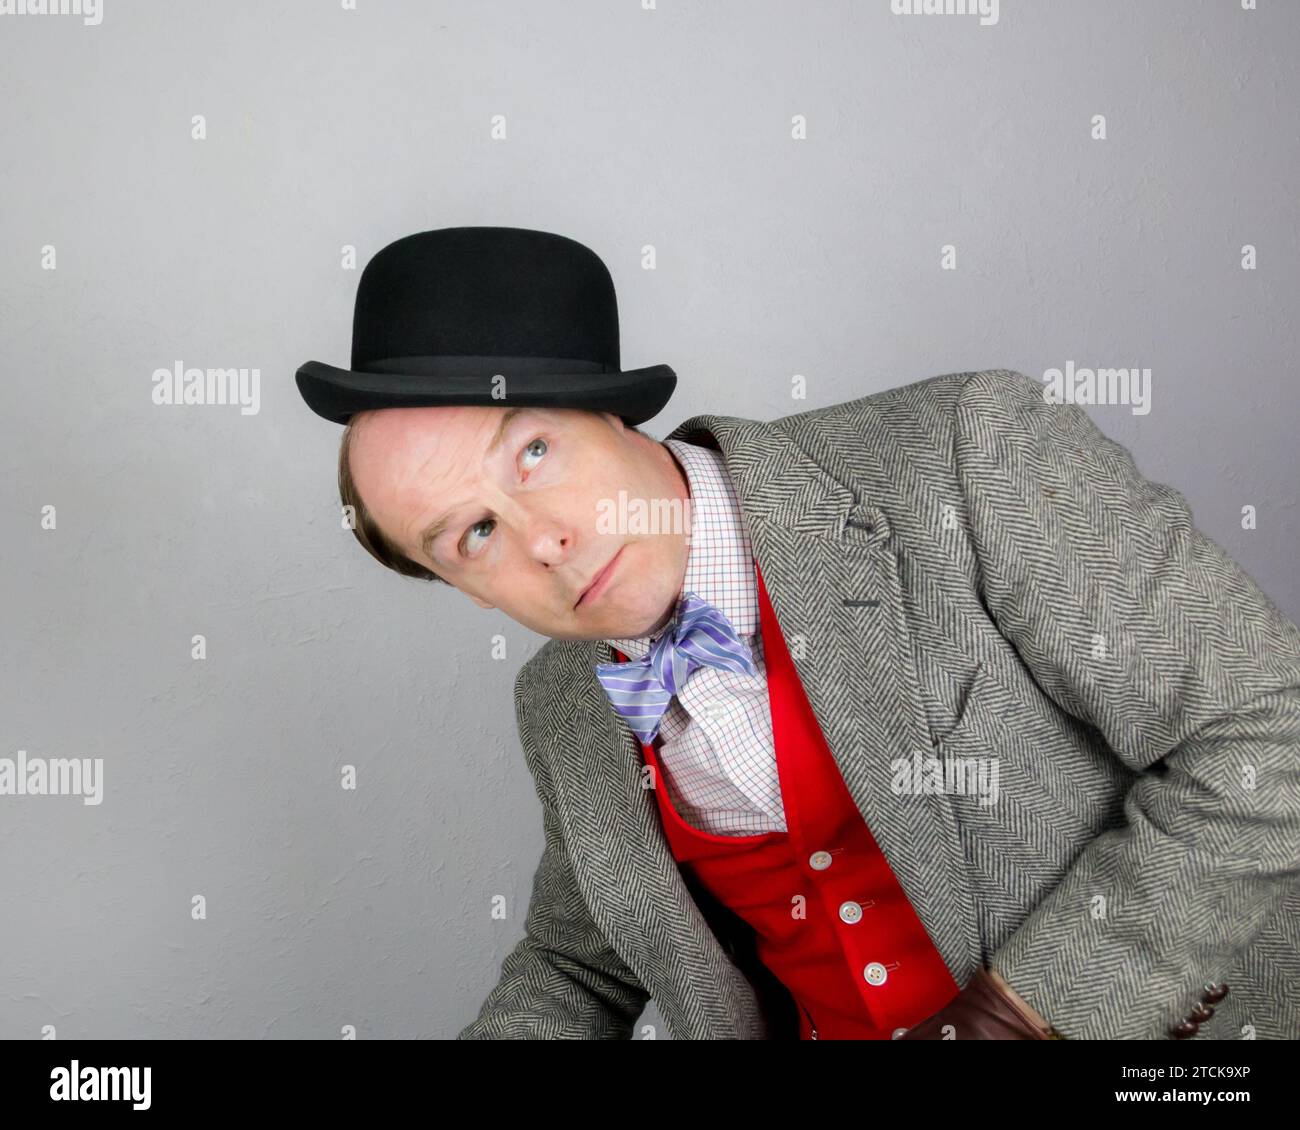 Porträt eines britischen Charakters in Tweed-Anzug und roter Weste, der einen Bowler-Hut auf seinem Kopf ausbalanciert. Konzept des Vintage Vaudeville Comic Schauspielers. Stockfoto